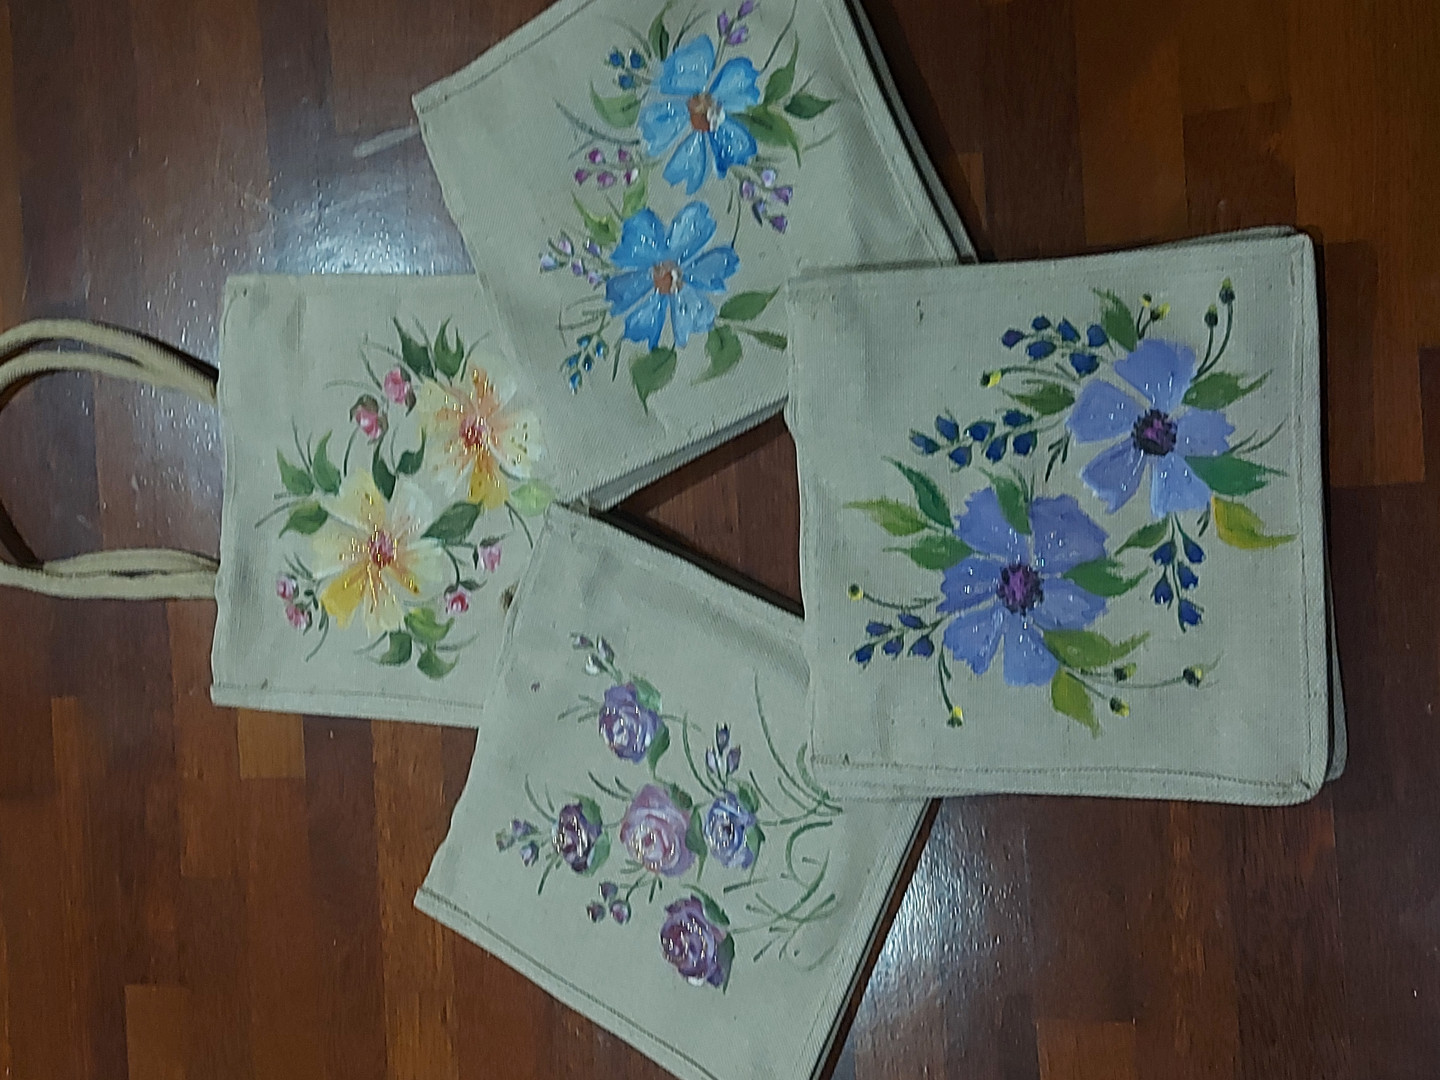 Hand painted jute bags